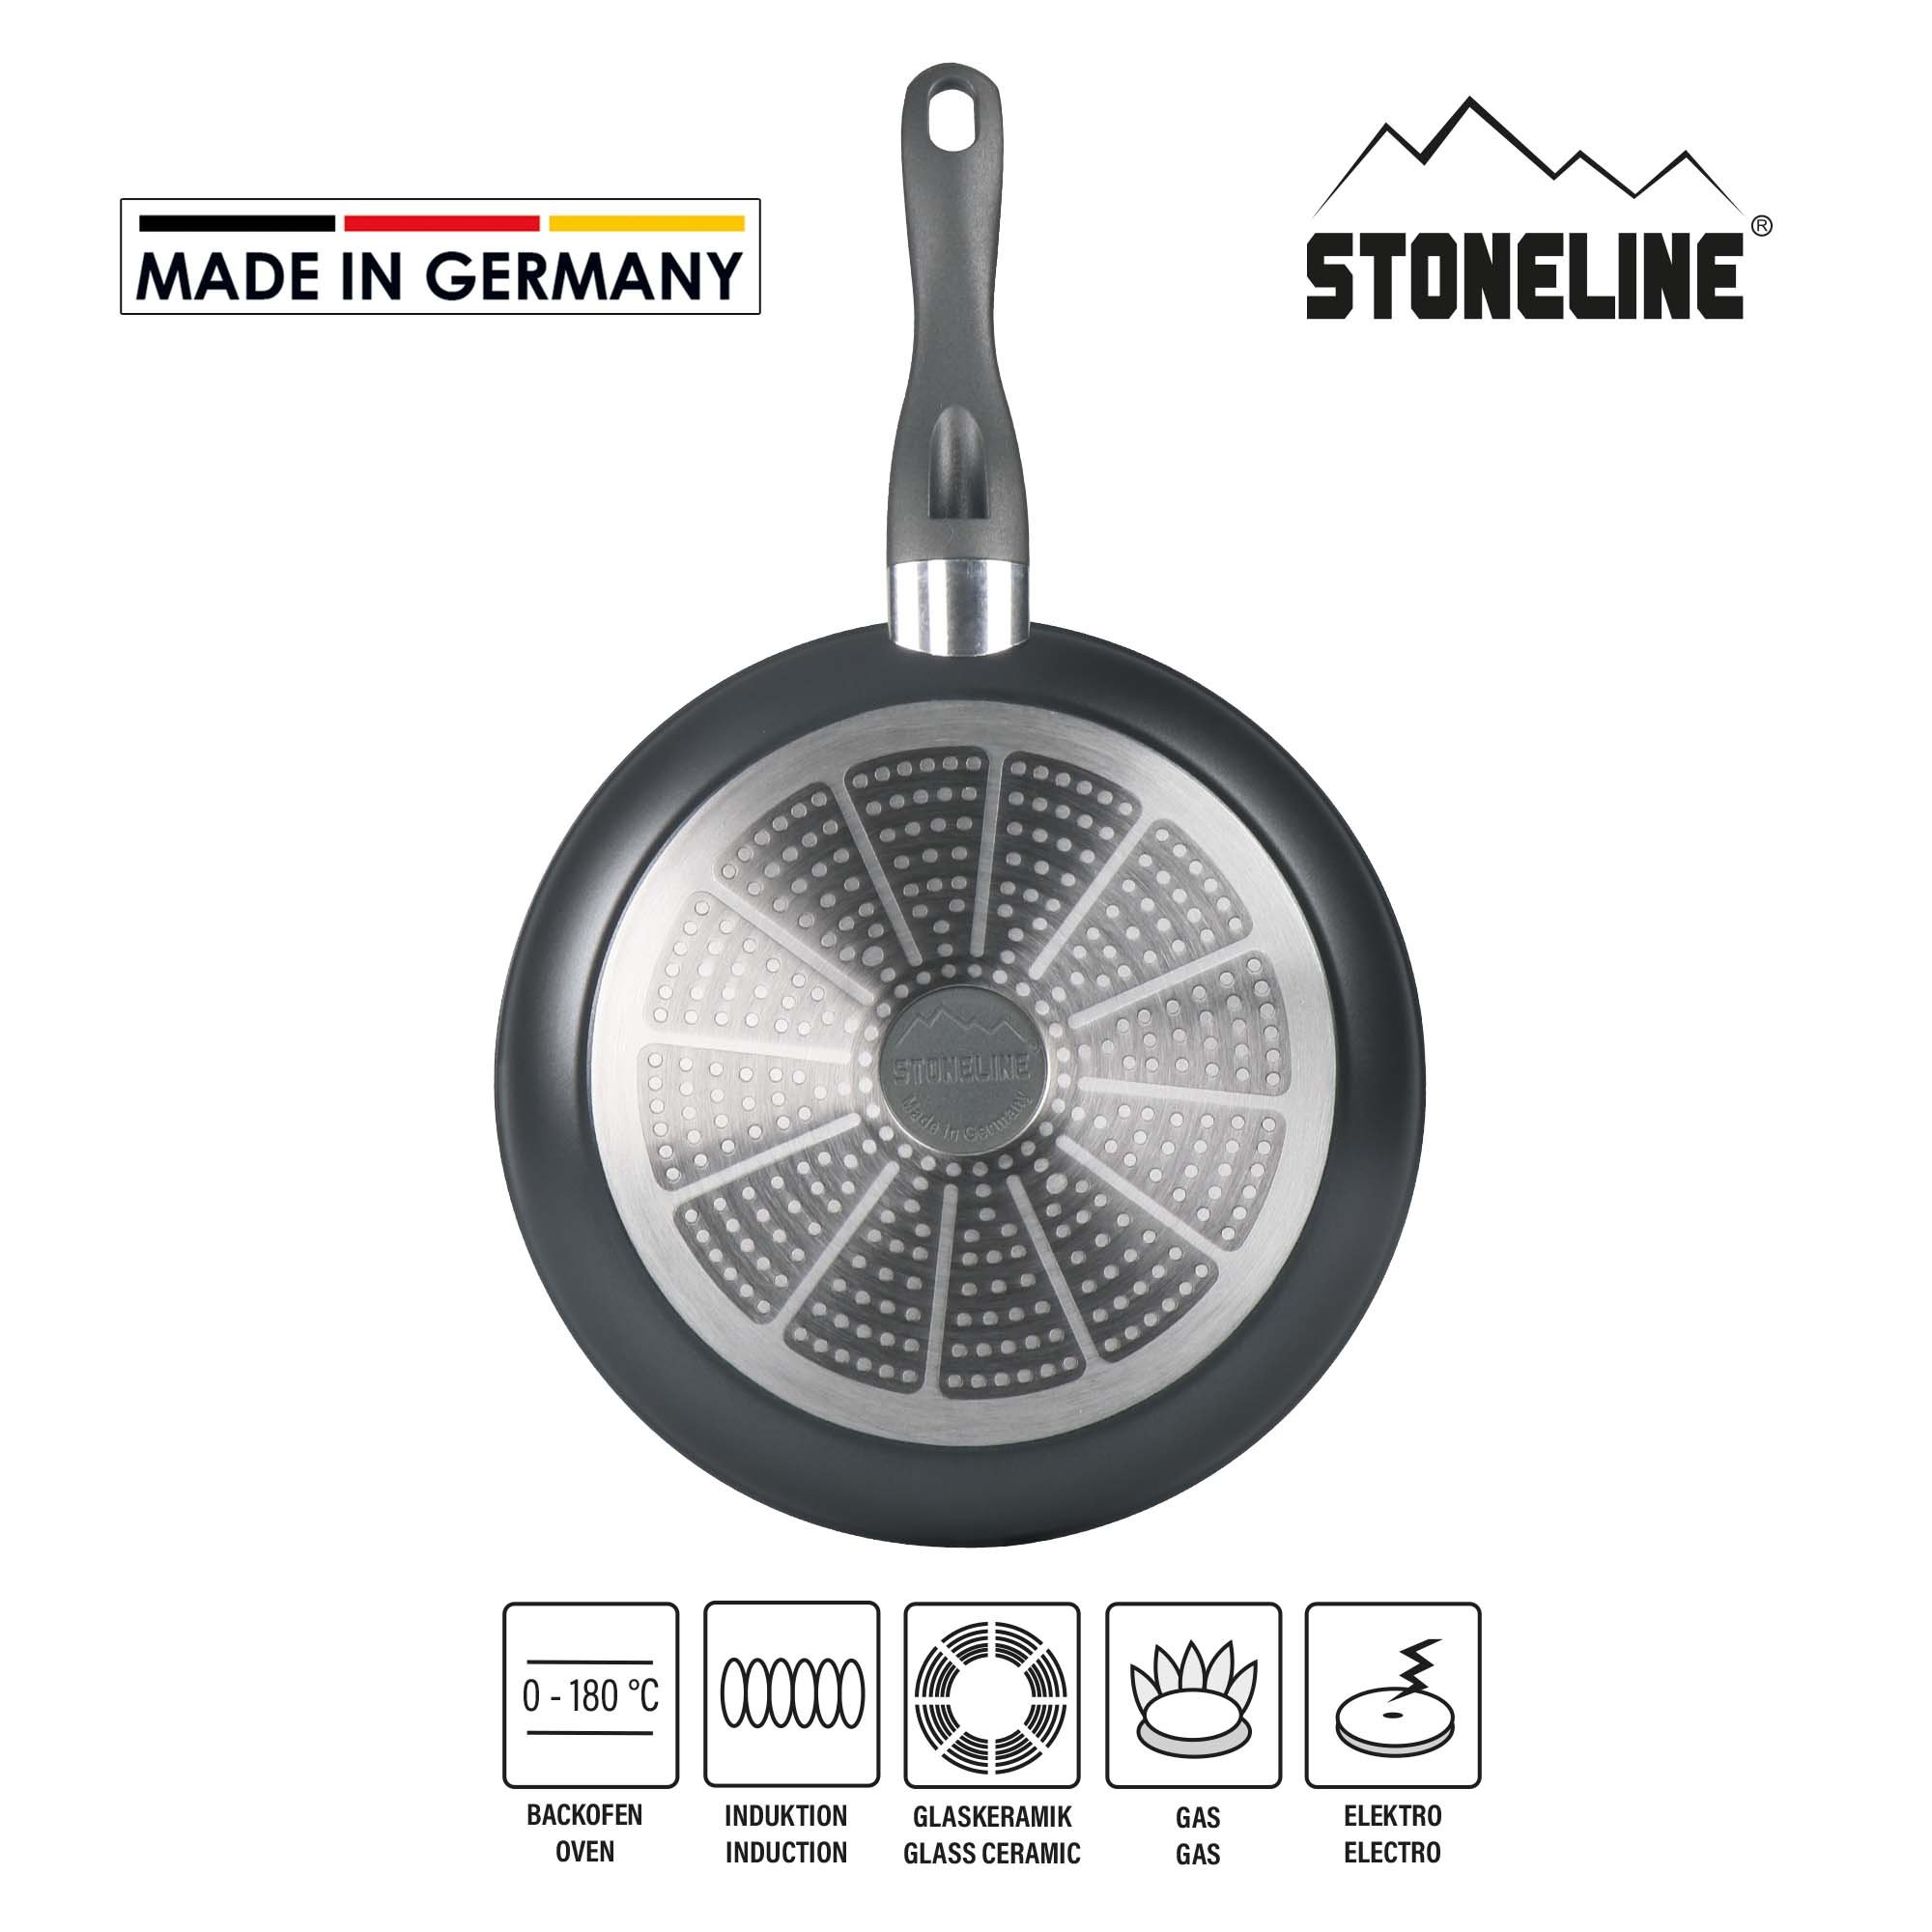 STONELINE® FRESH sartén 28 cm, Made in Germany, antiadherente, apta para inducción y horno